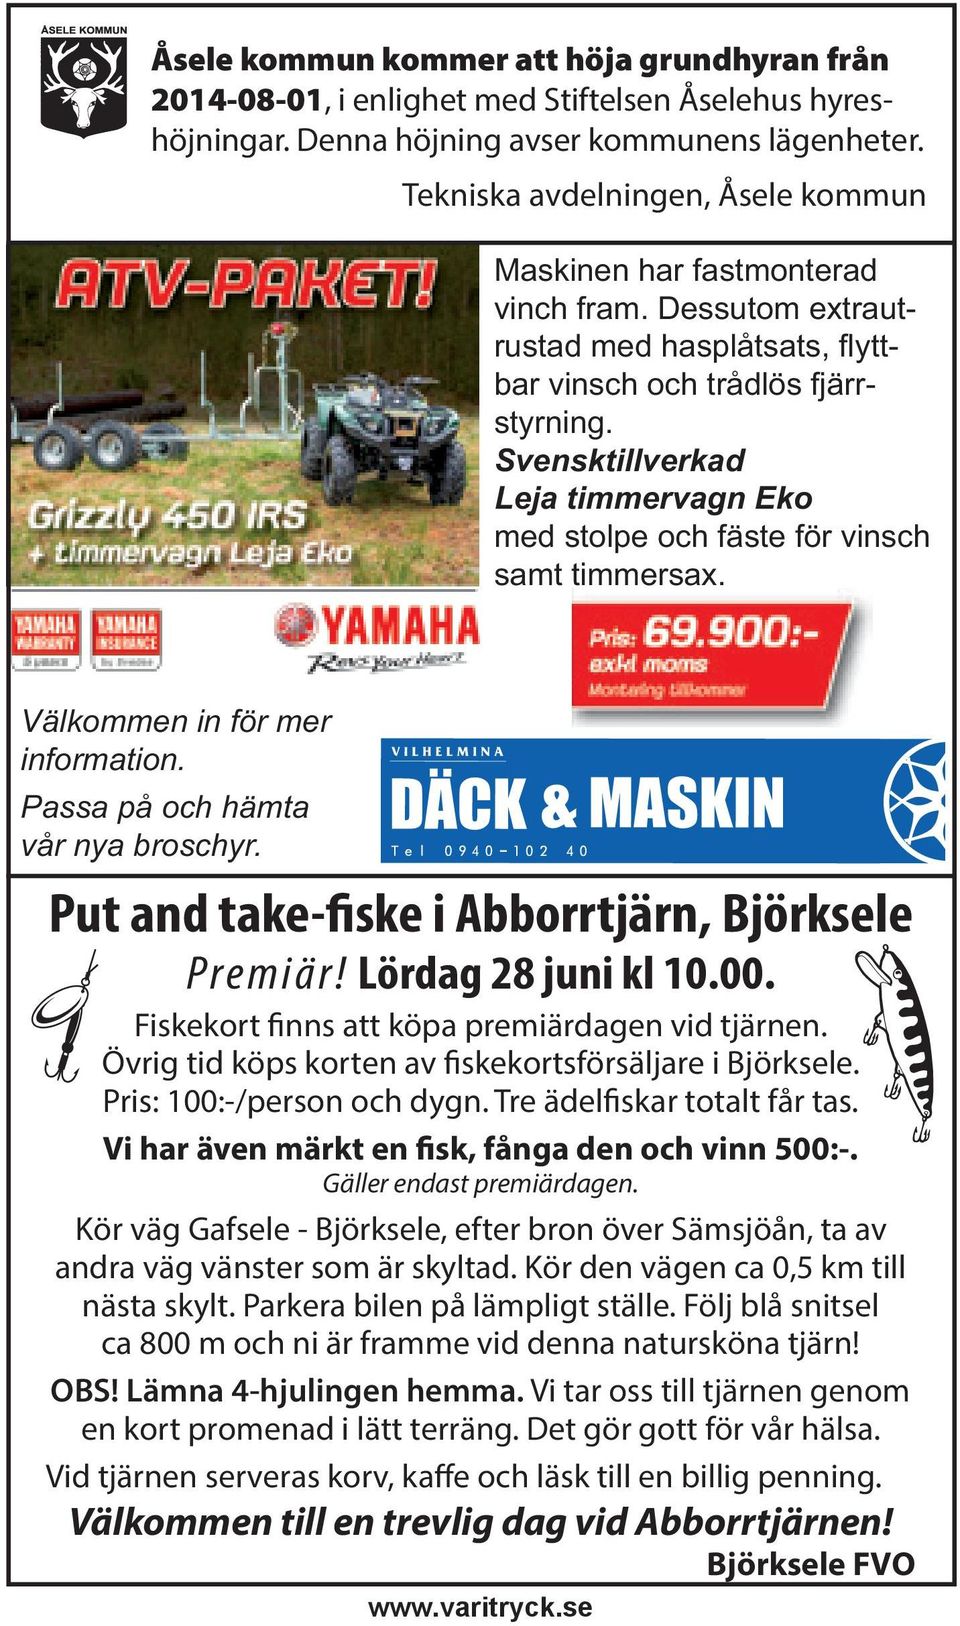 Svensktillverkad Leja timmervagn Eko med stolpe och fäste för vinsch samt timmersax. Välkommen in för mer information. Passa på och hämta vår nya broschyr.